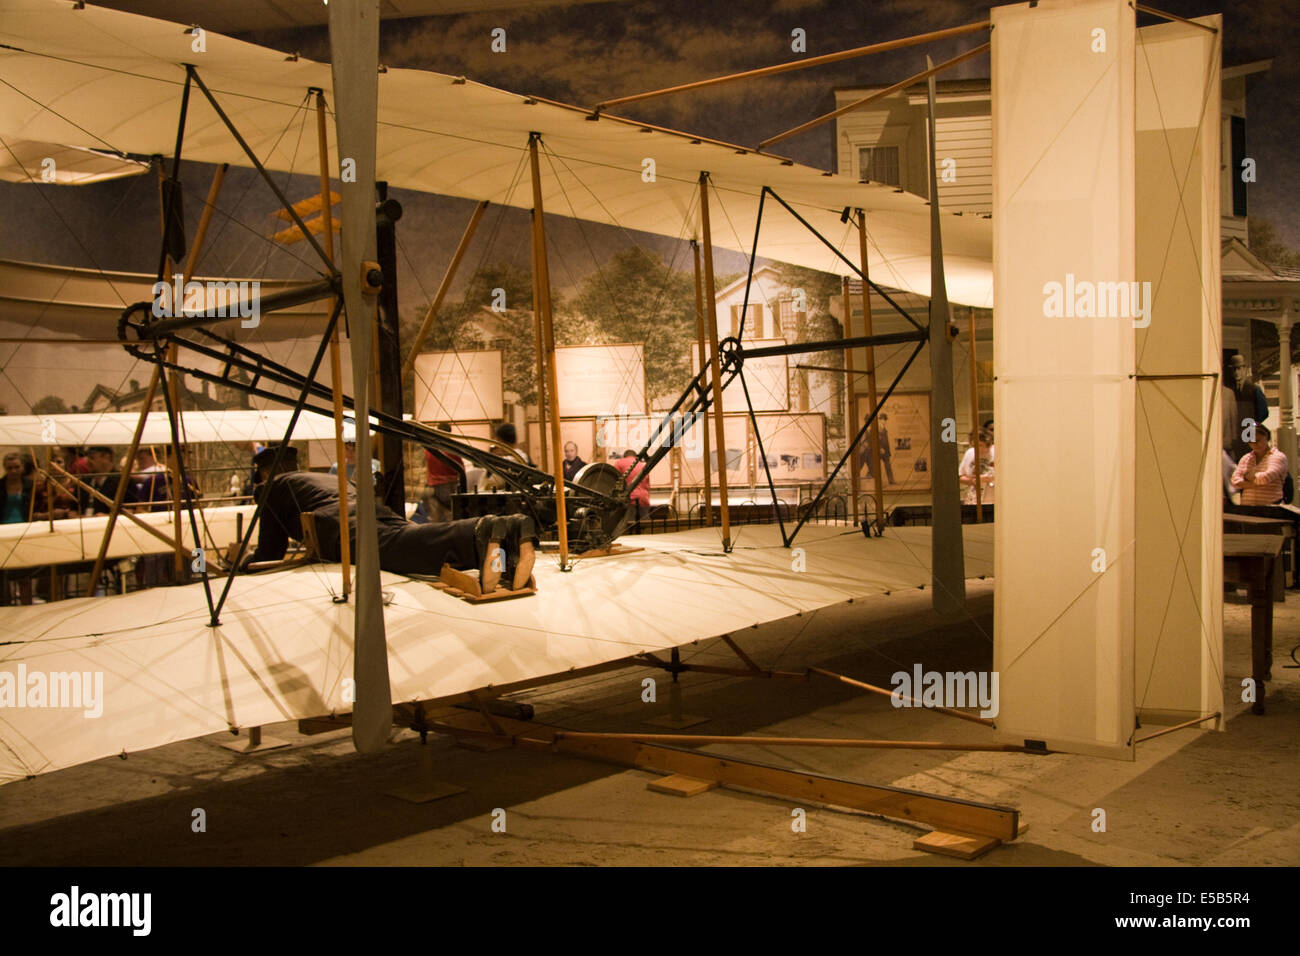 1903 Wright Flyer ; le premier appareil plus lourd que l'air ; d'aéronefs motorisés de faire un effort soutenu ; maîtrise de l'avion avec un pilote à bord. Banque D'Images